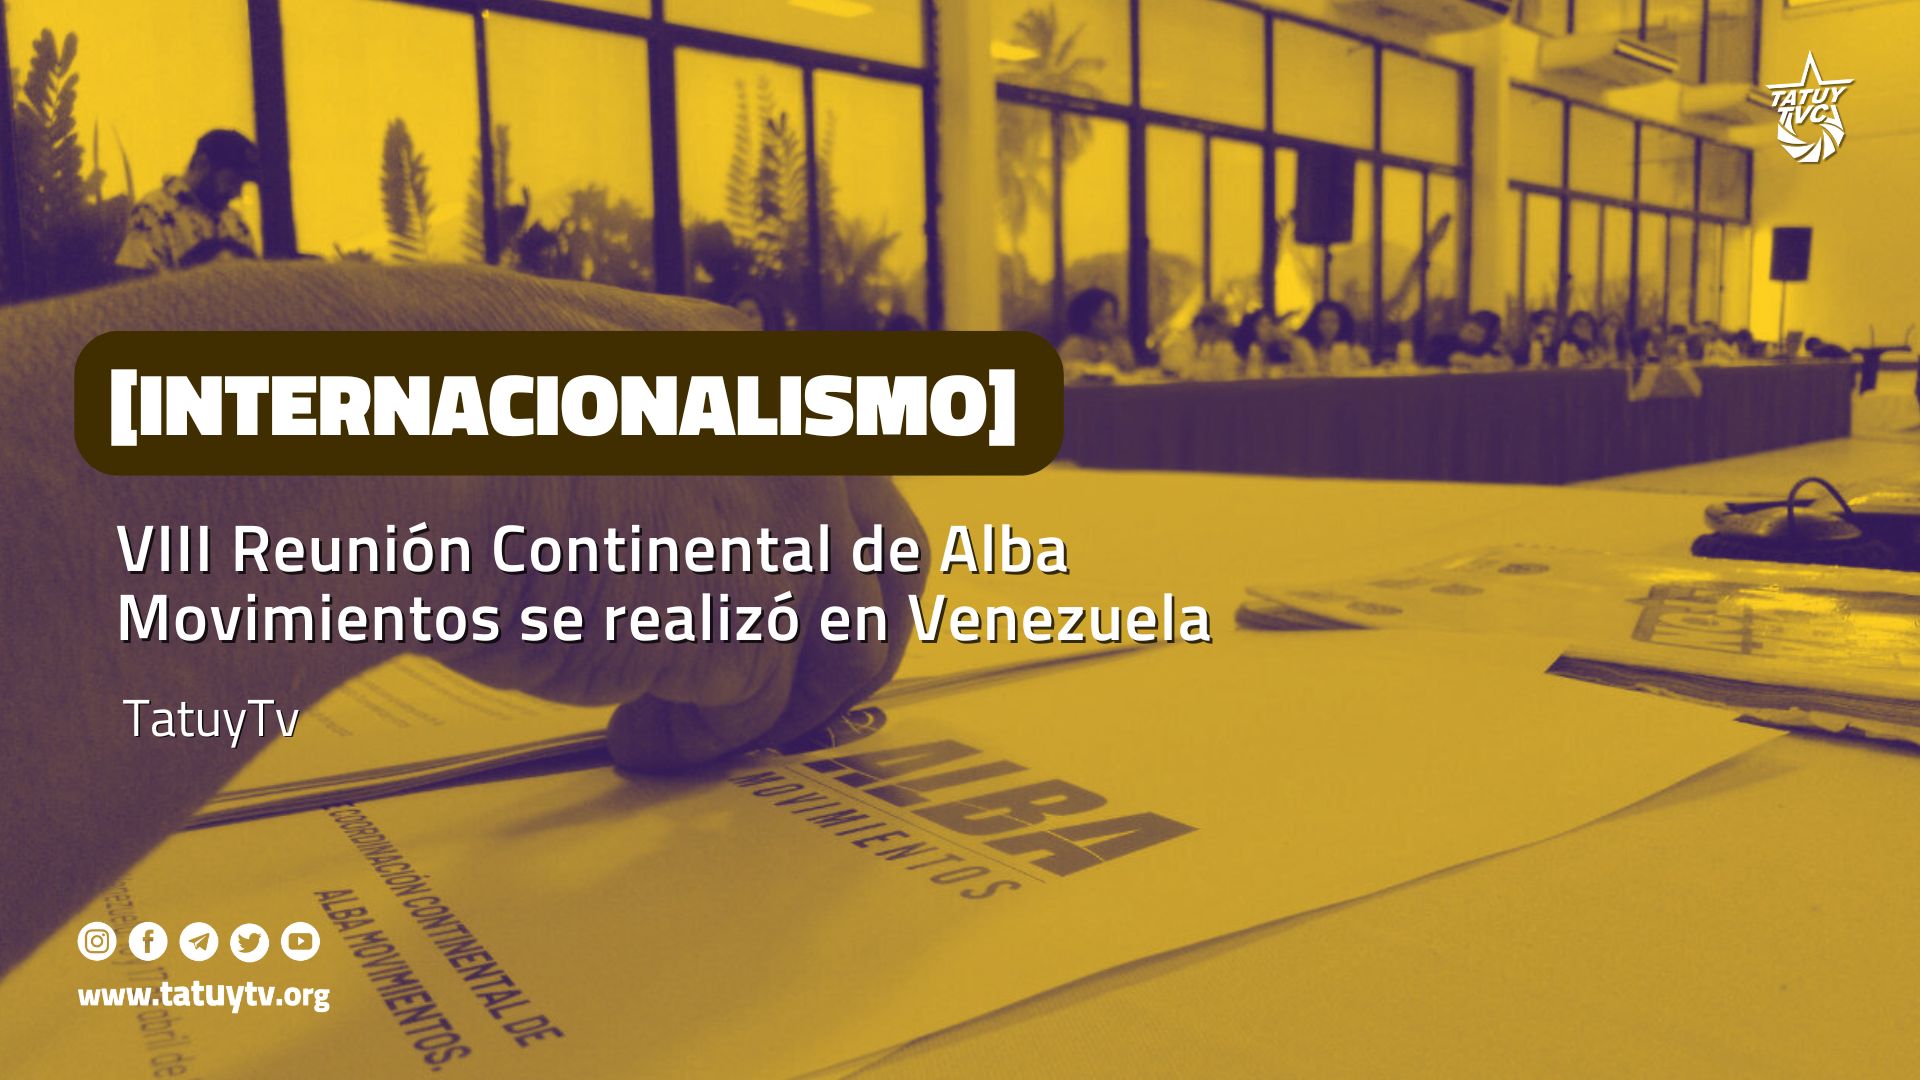 [INTERNACIONALISMO] VIII Reunión Continental de Alba Movimientos se realizó en Venezuela